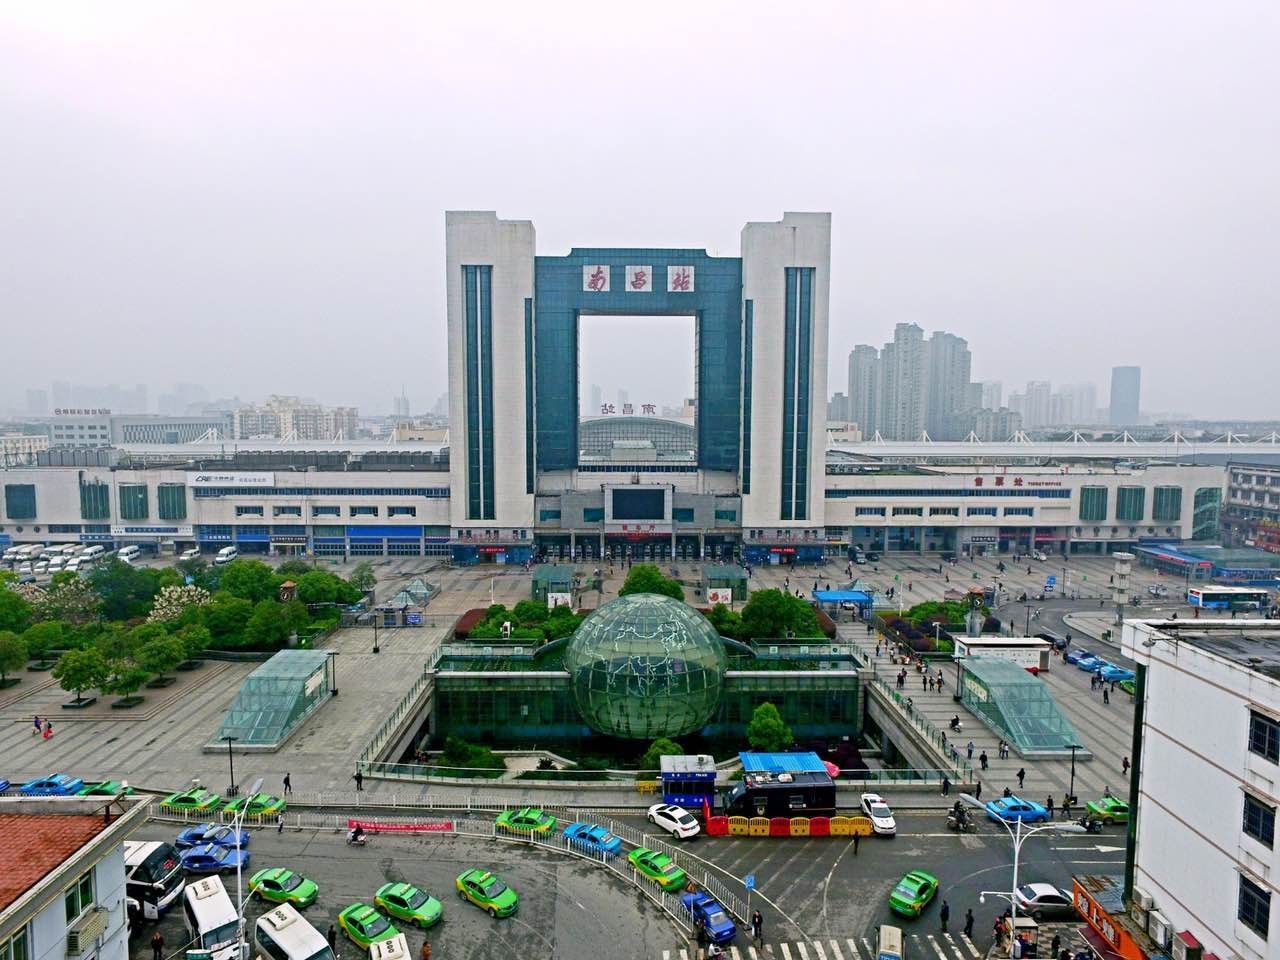 【出行提示】南昌火车站(南站)区域实行临时交通管制